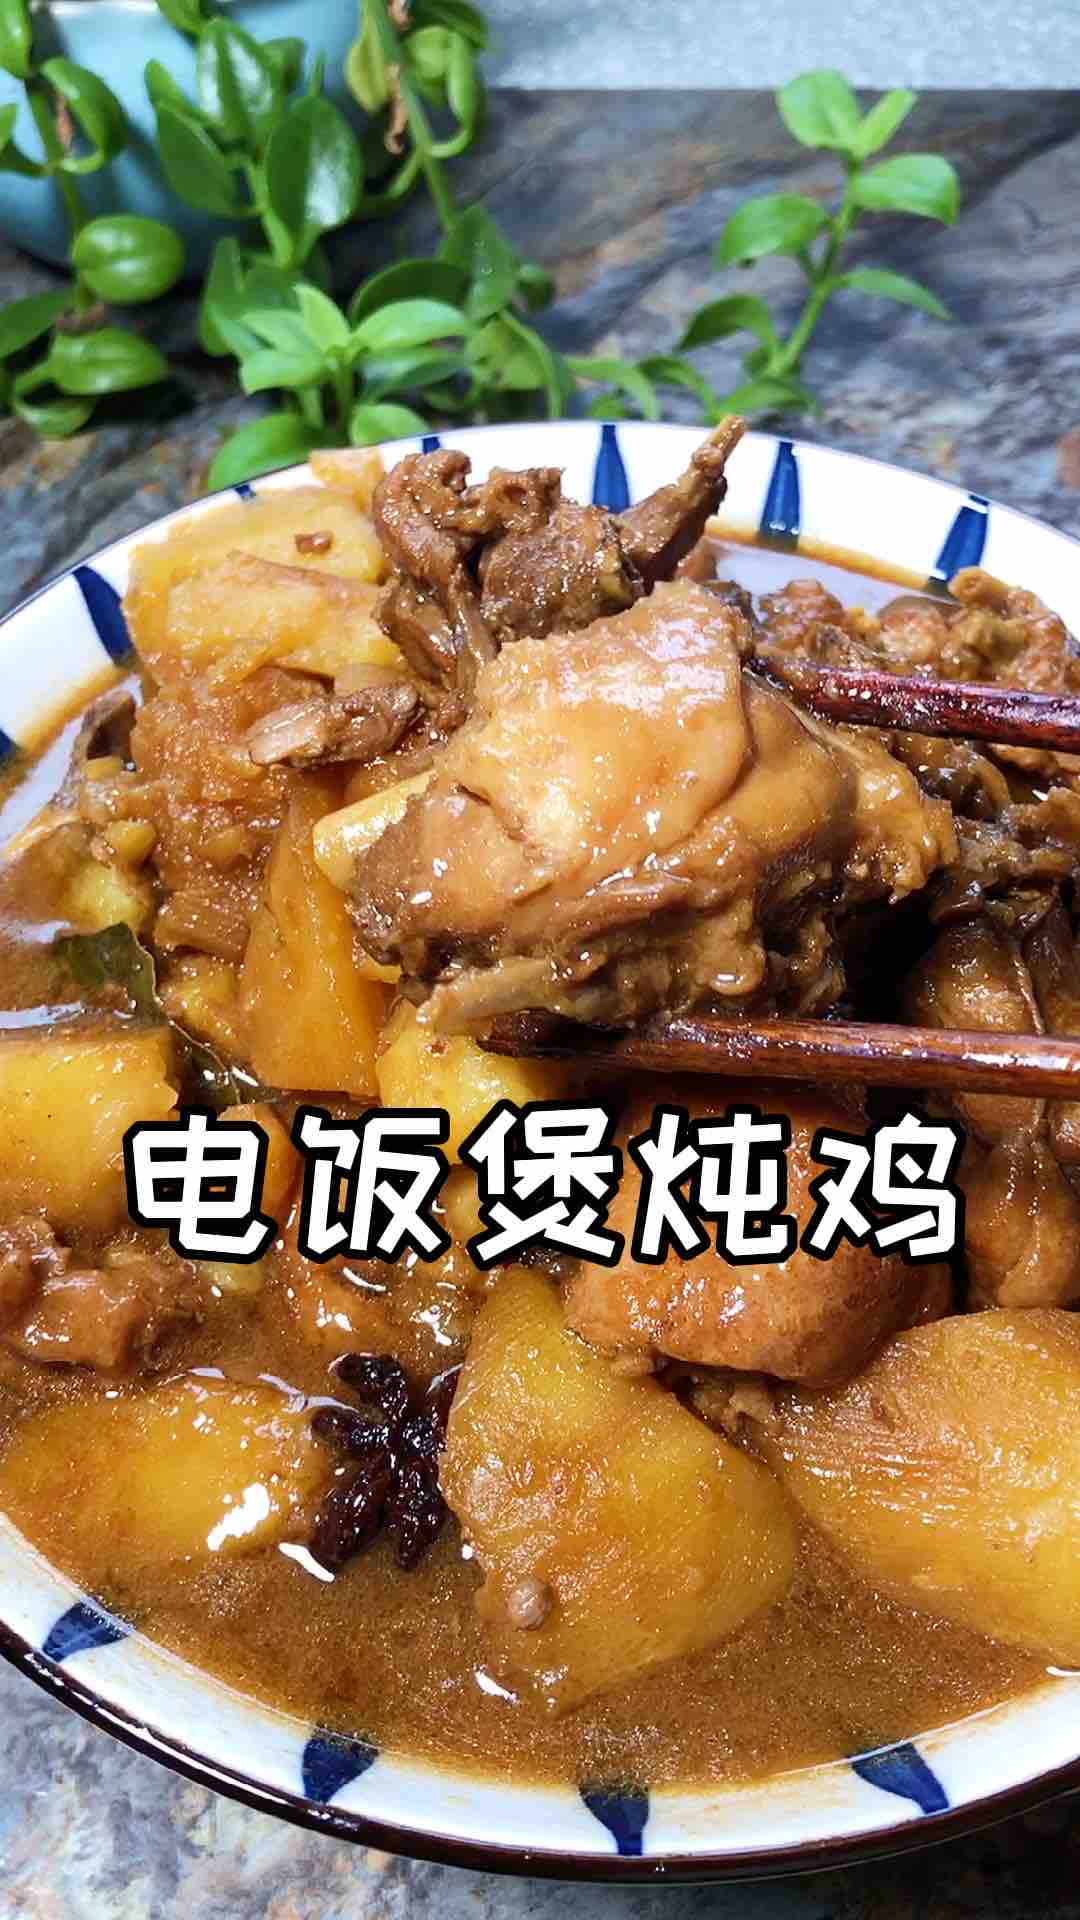 Rice Cooker Chicken Stew recipe